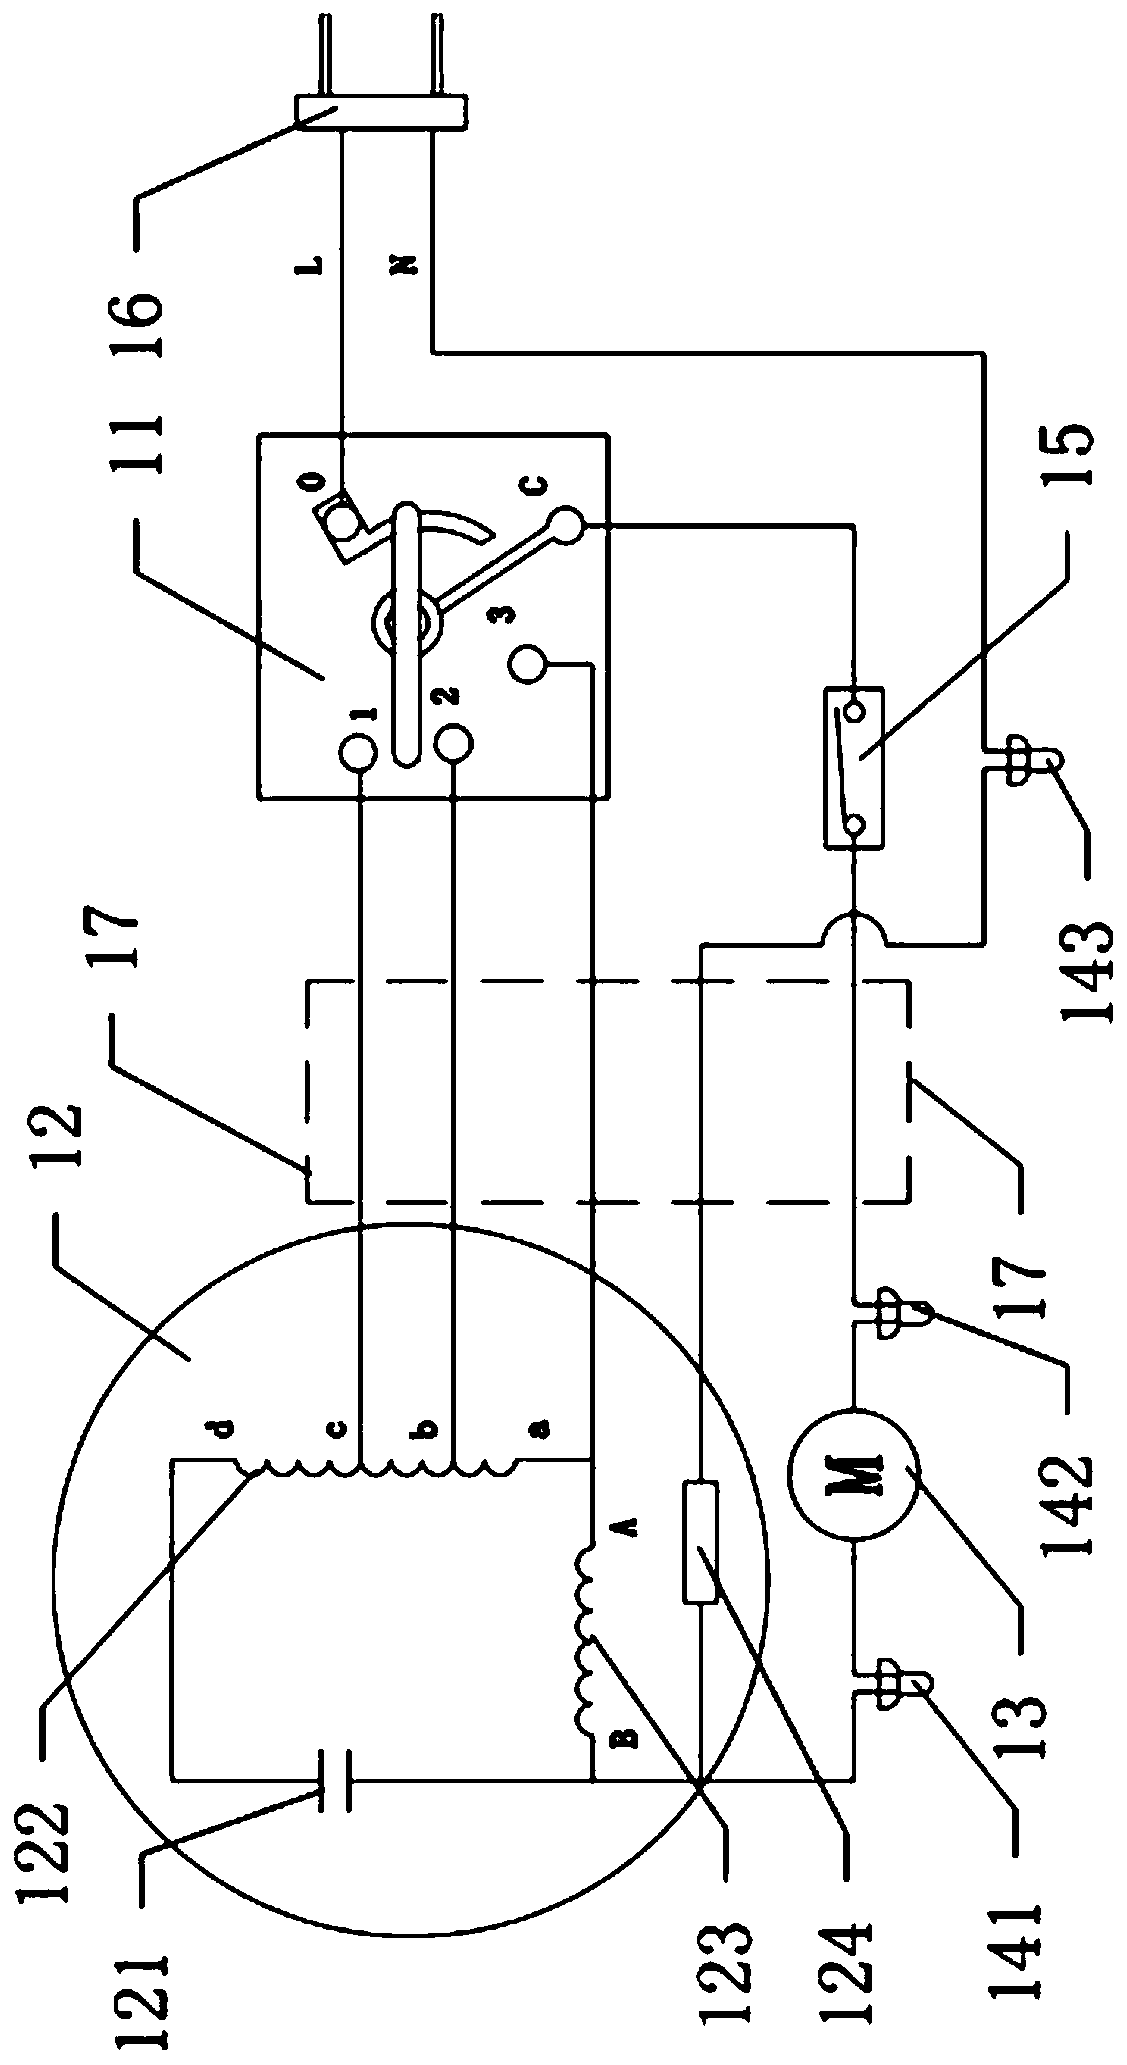 Wiring circuit of wall fan motor